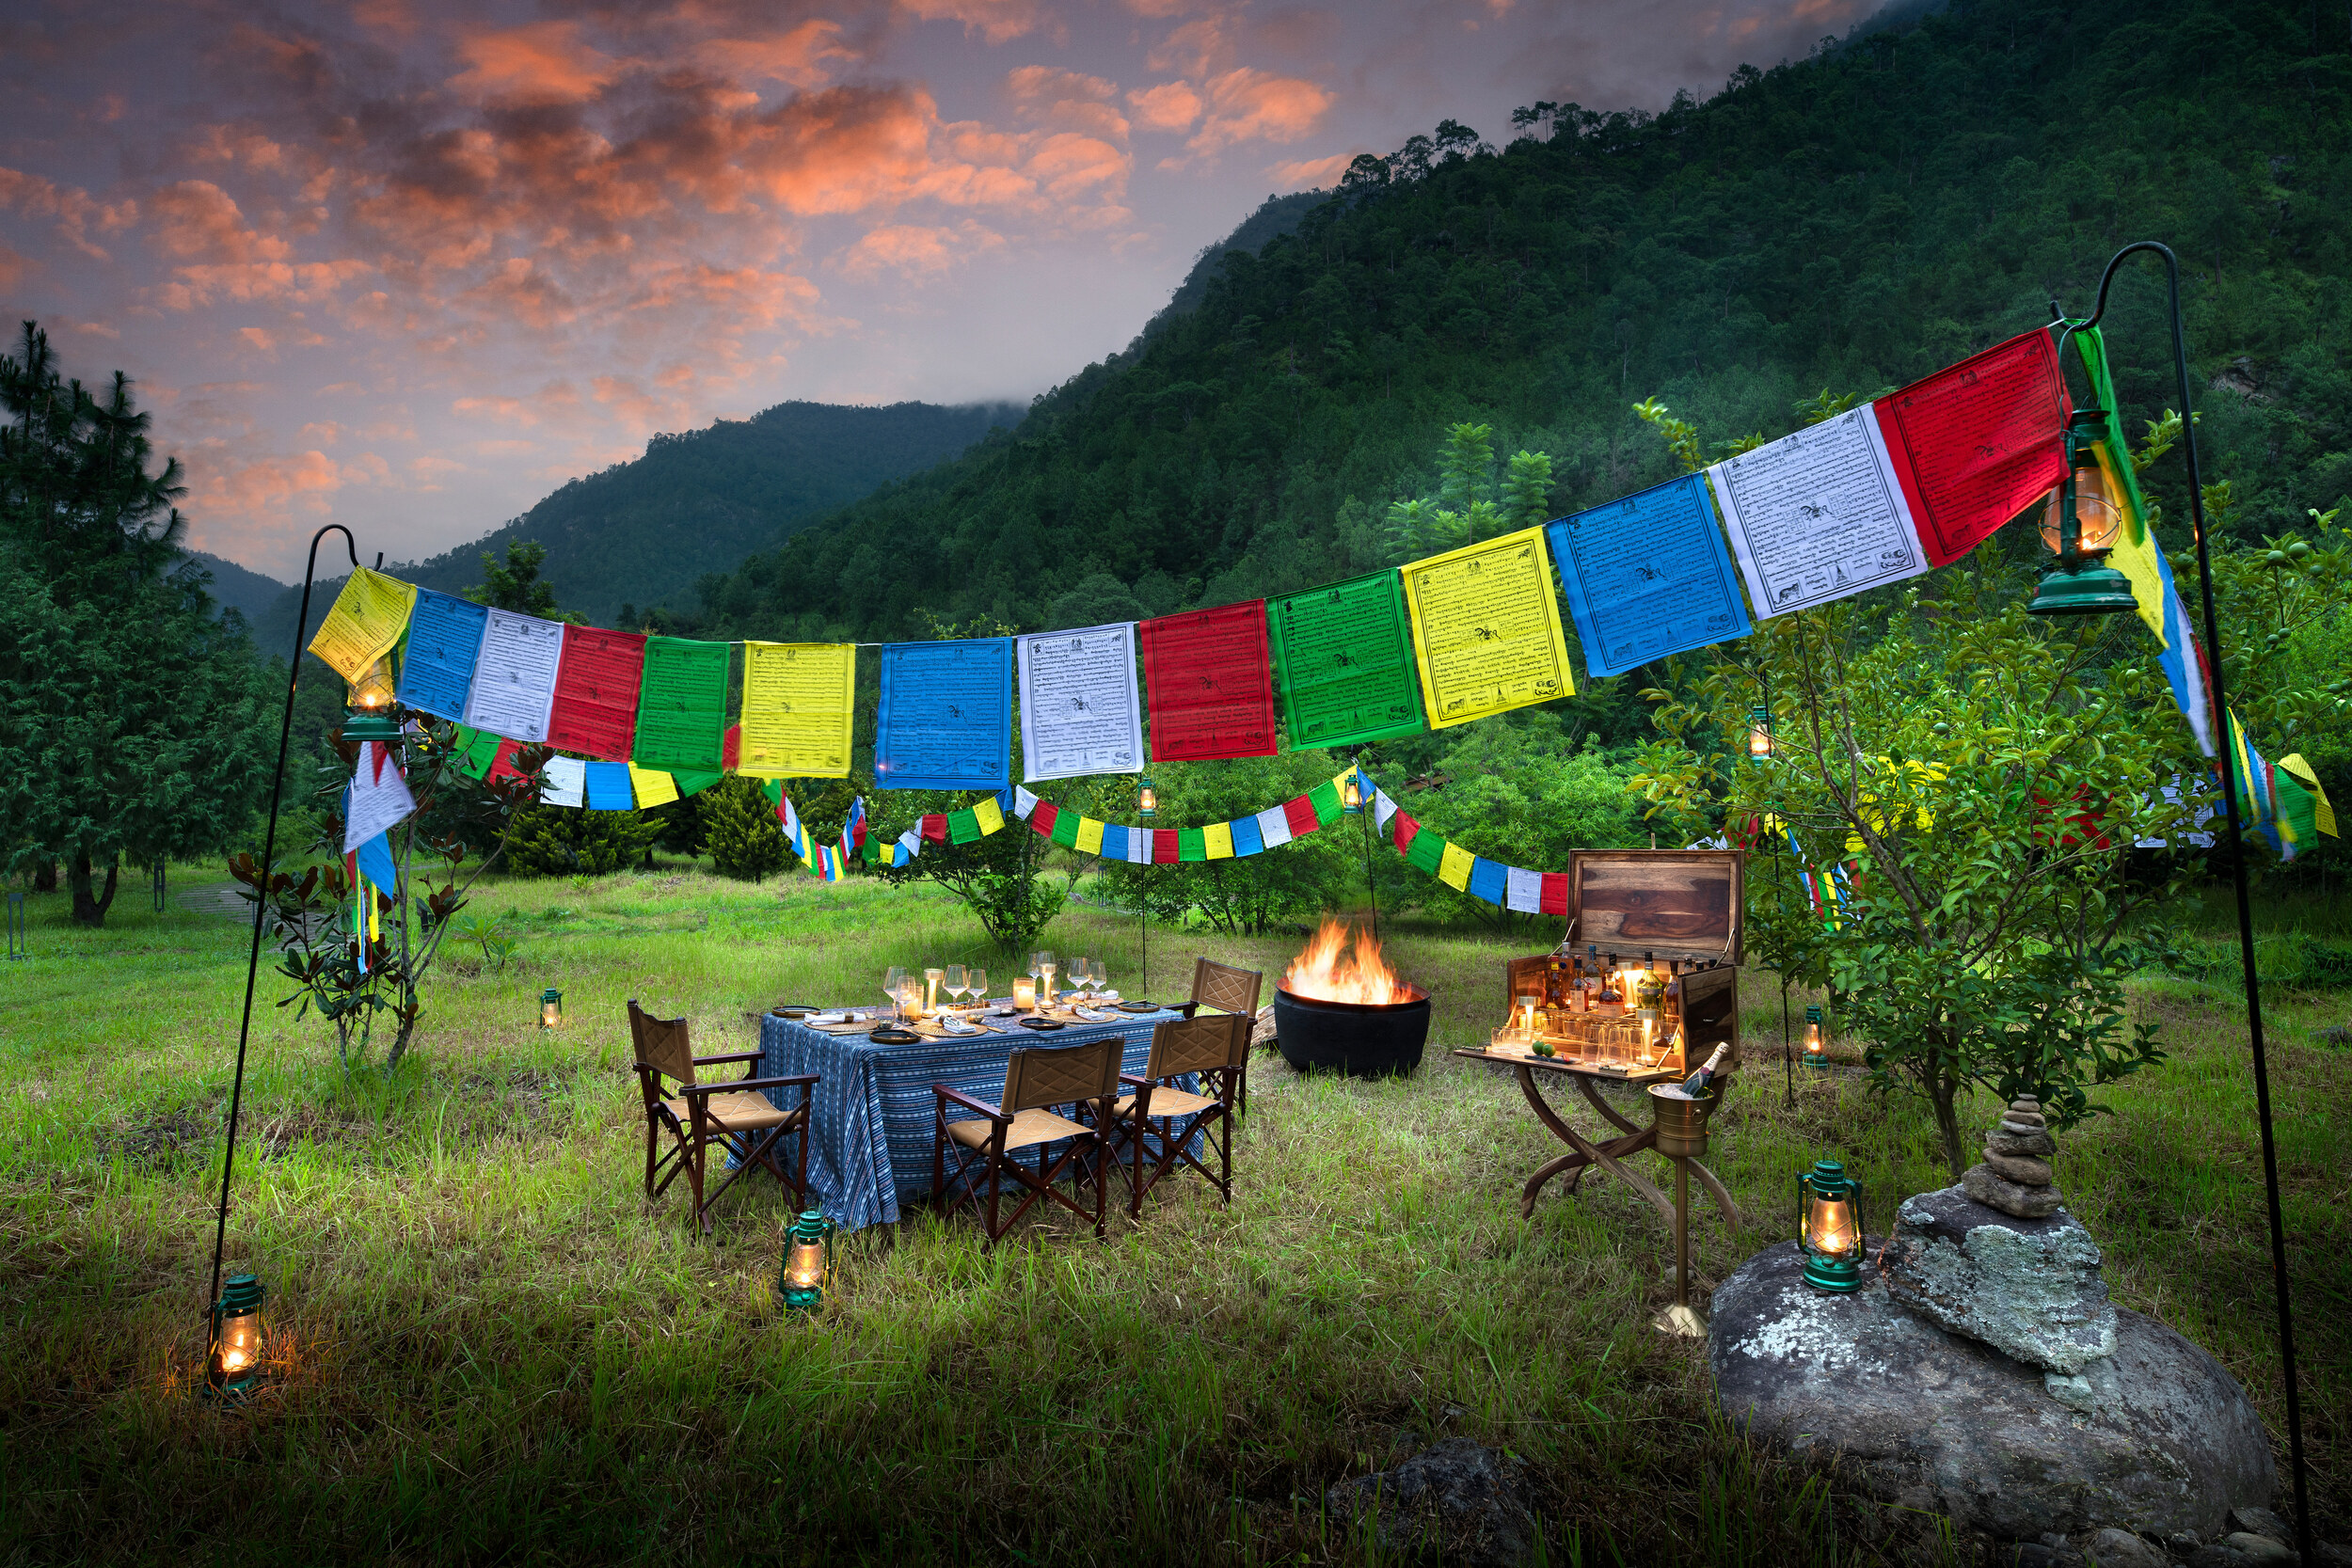 戶外營火晚餐特別佈置有為遊客祈福的藏傳佛教五彩風馬旗。